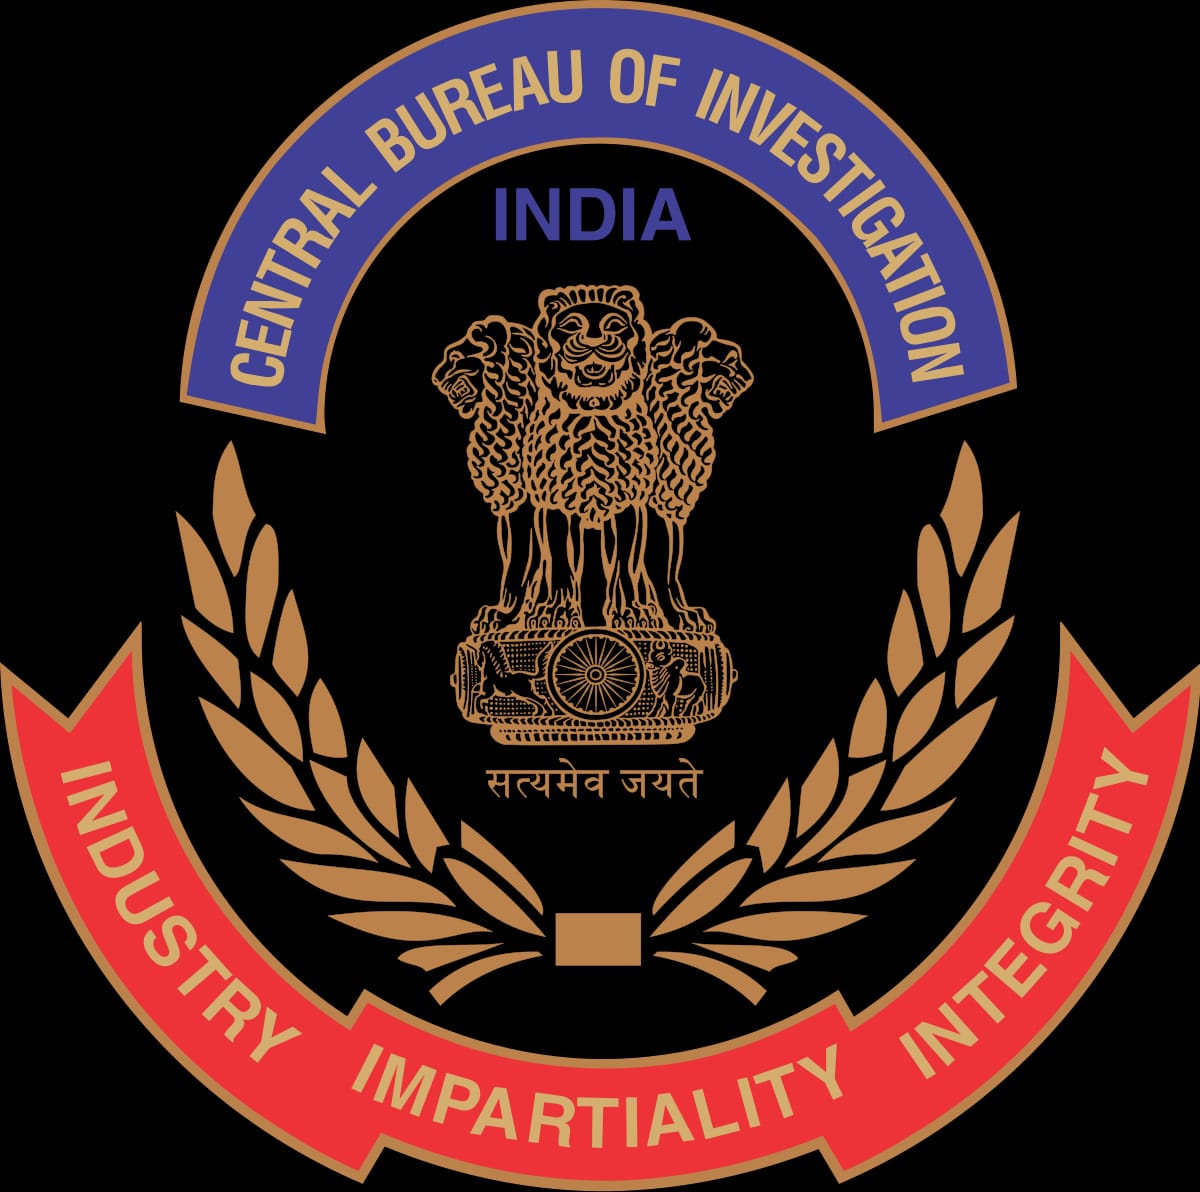 ब्रेकिंग न्यूज़ : बिरनपुर हत्याकांड : सीबीआई ने 12 लोगो के खिलाफ दर्ज की एफआईआर, सभी बेमेतरा जिले से